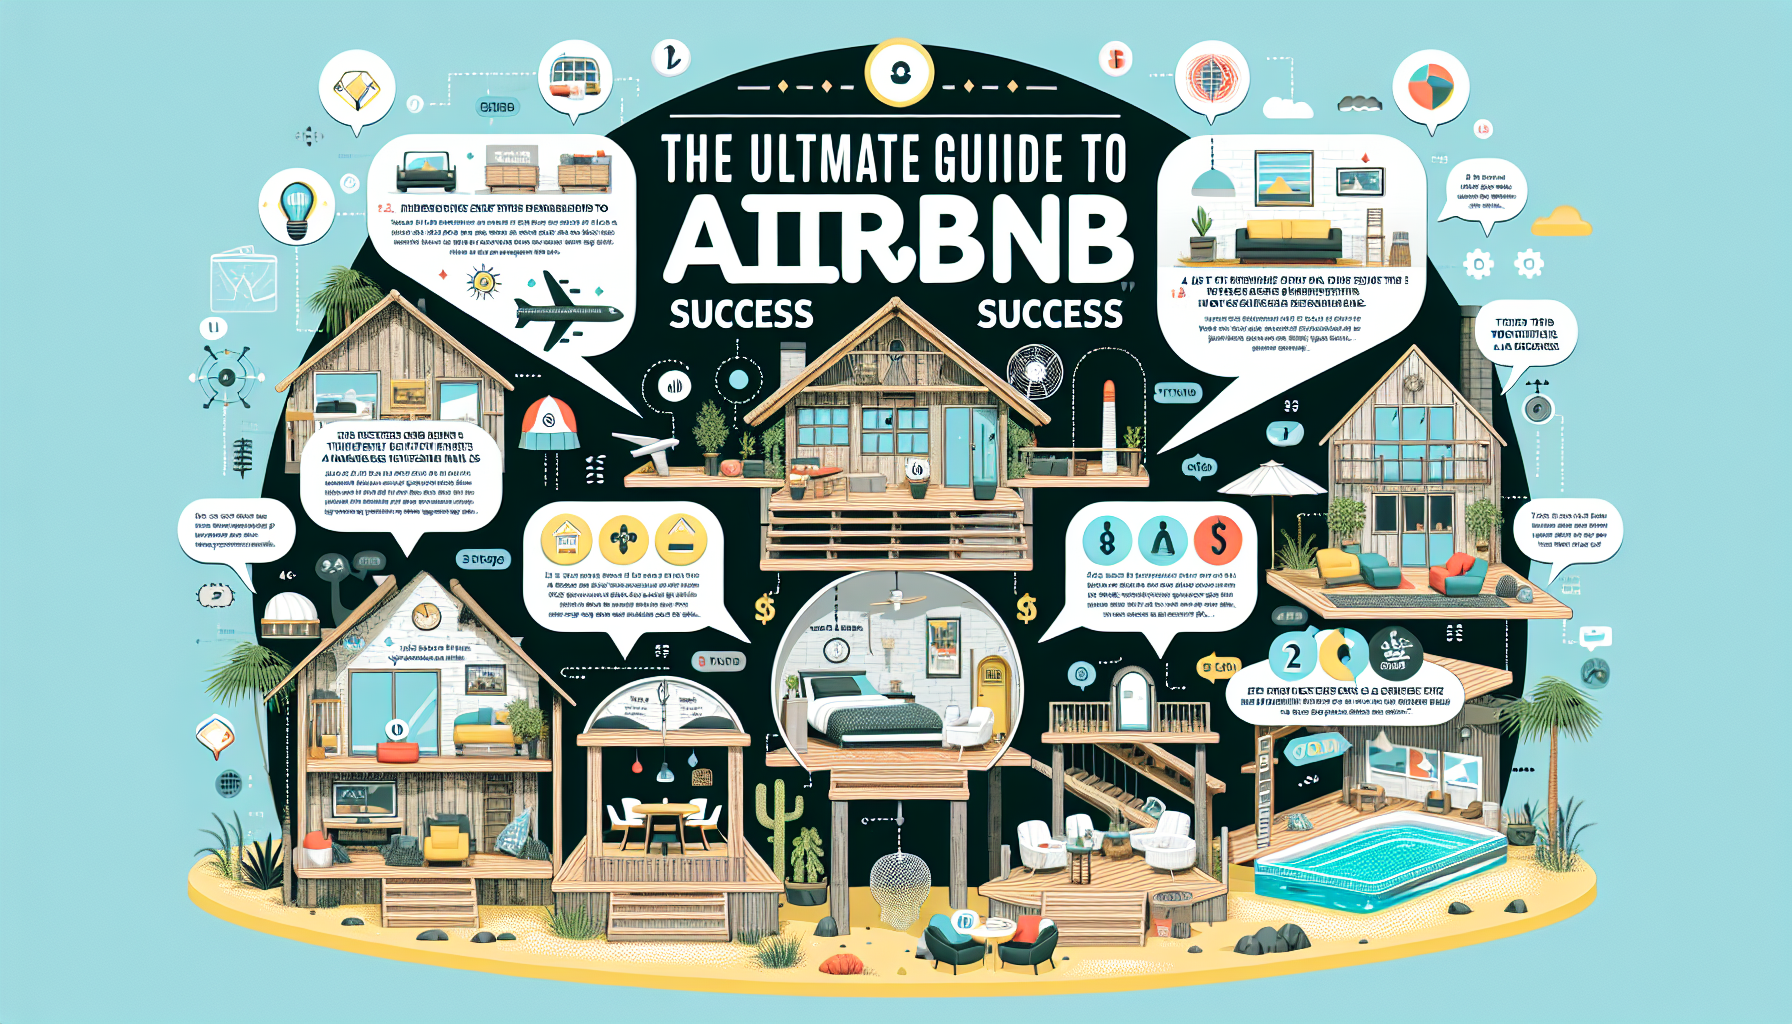 besoin d'aide pour résoudre vos problèmes sur airbnb ? trouvez les solutions adéquates avec nos conseils pratiques et notre expertise.